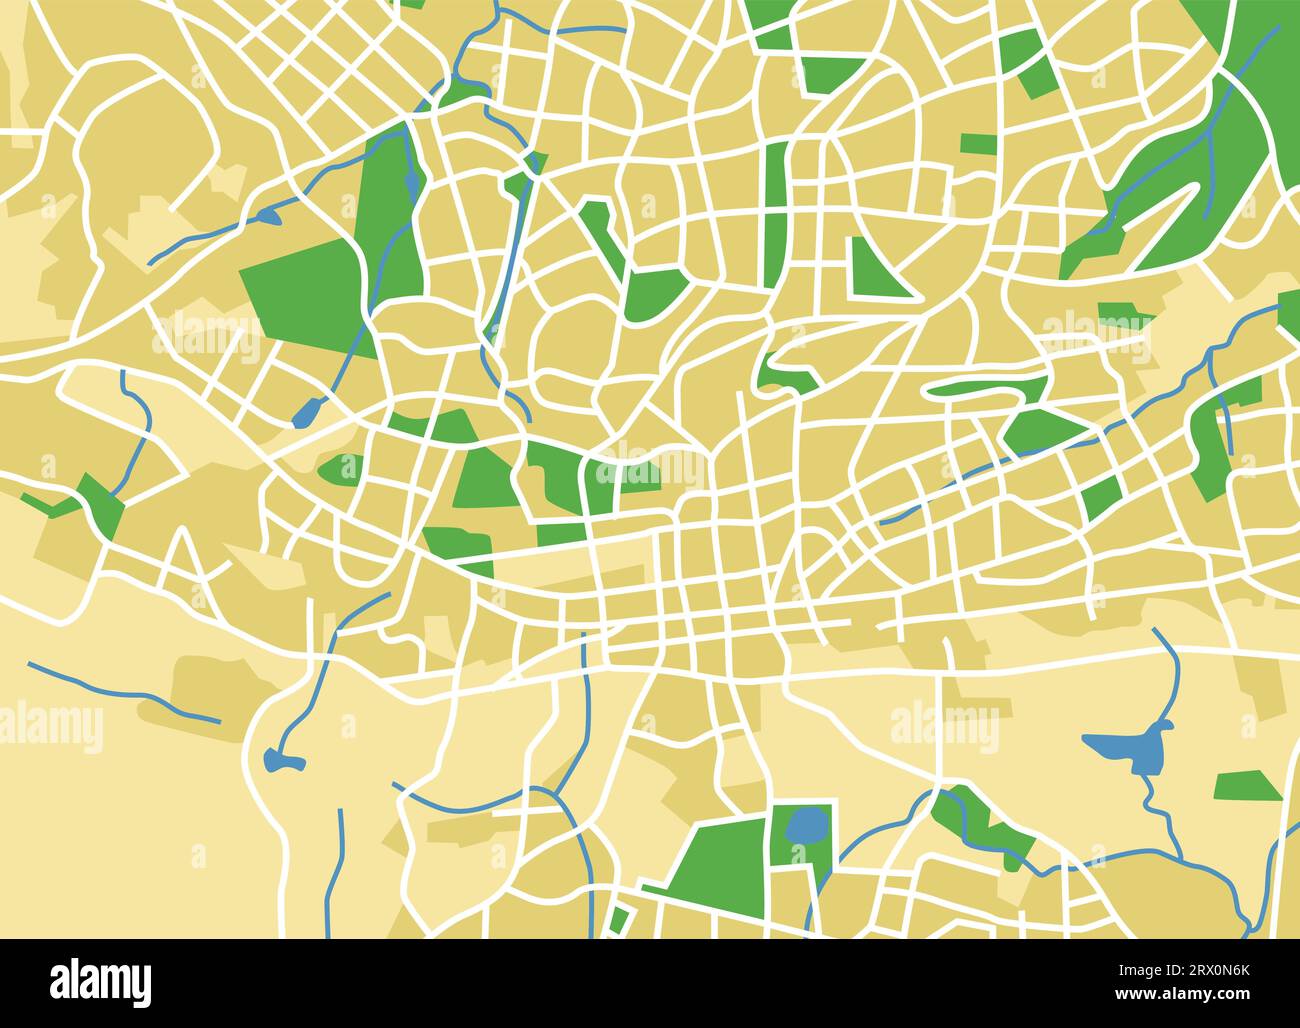 Mappa di illustrazione vettoriale stratificata di Johannesburg. Illustrazione Vettoriale